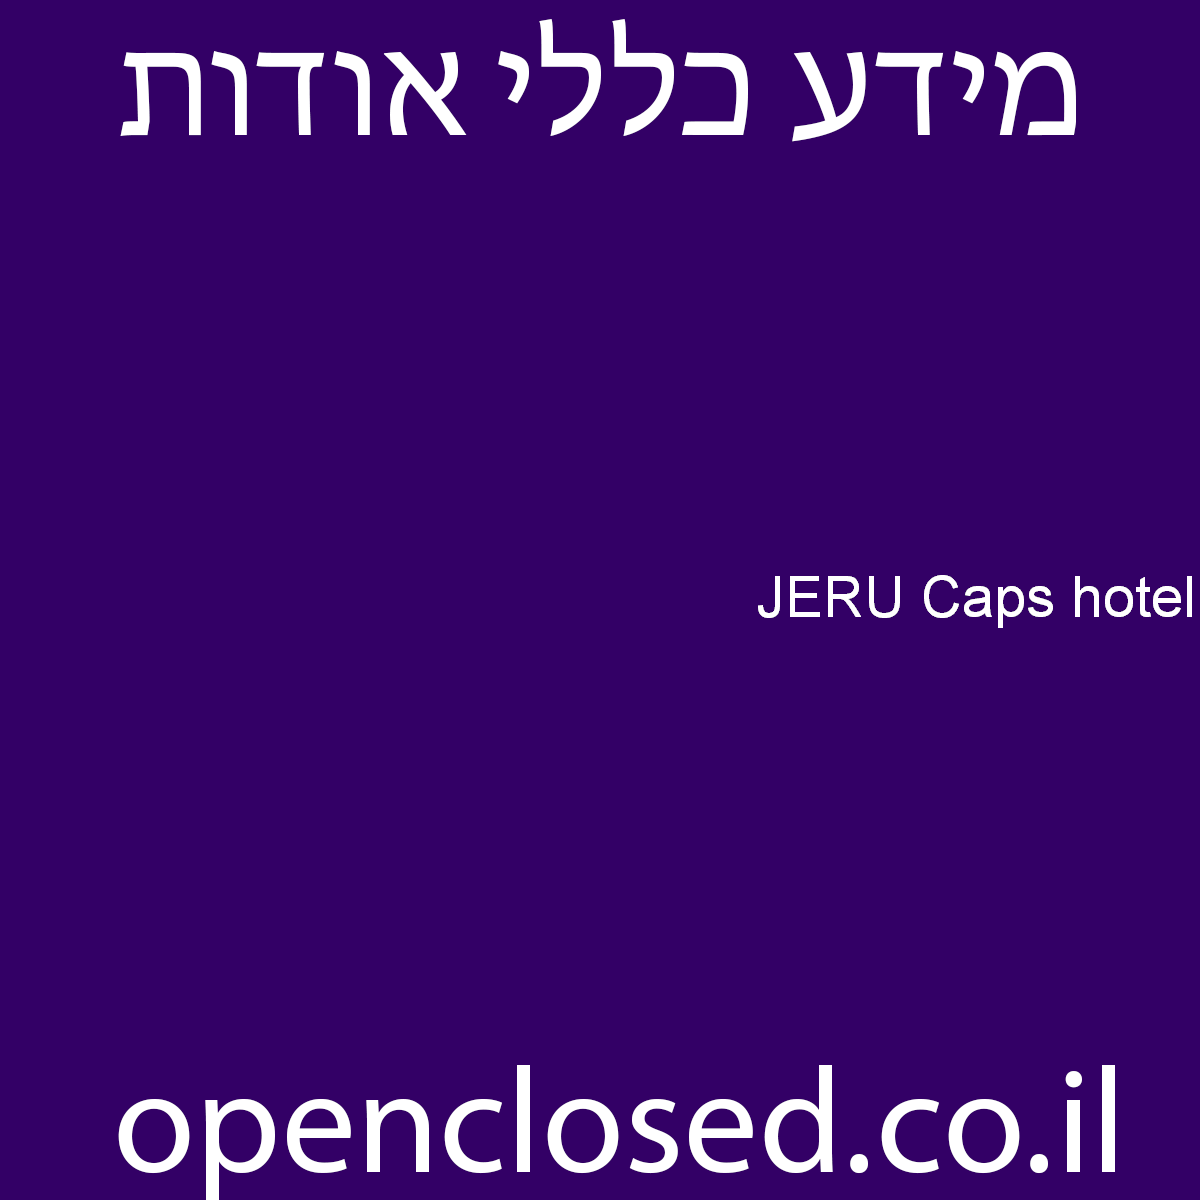 JERU Caps hotel